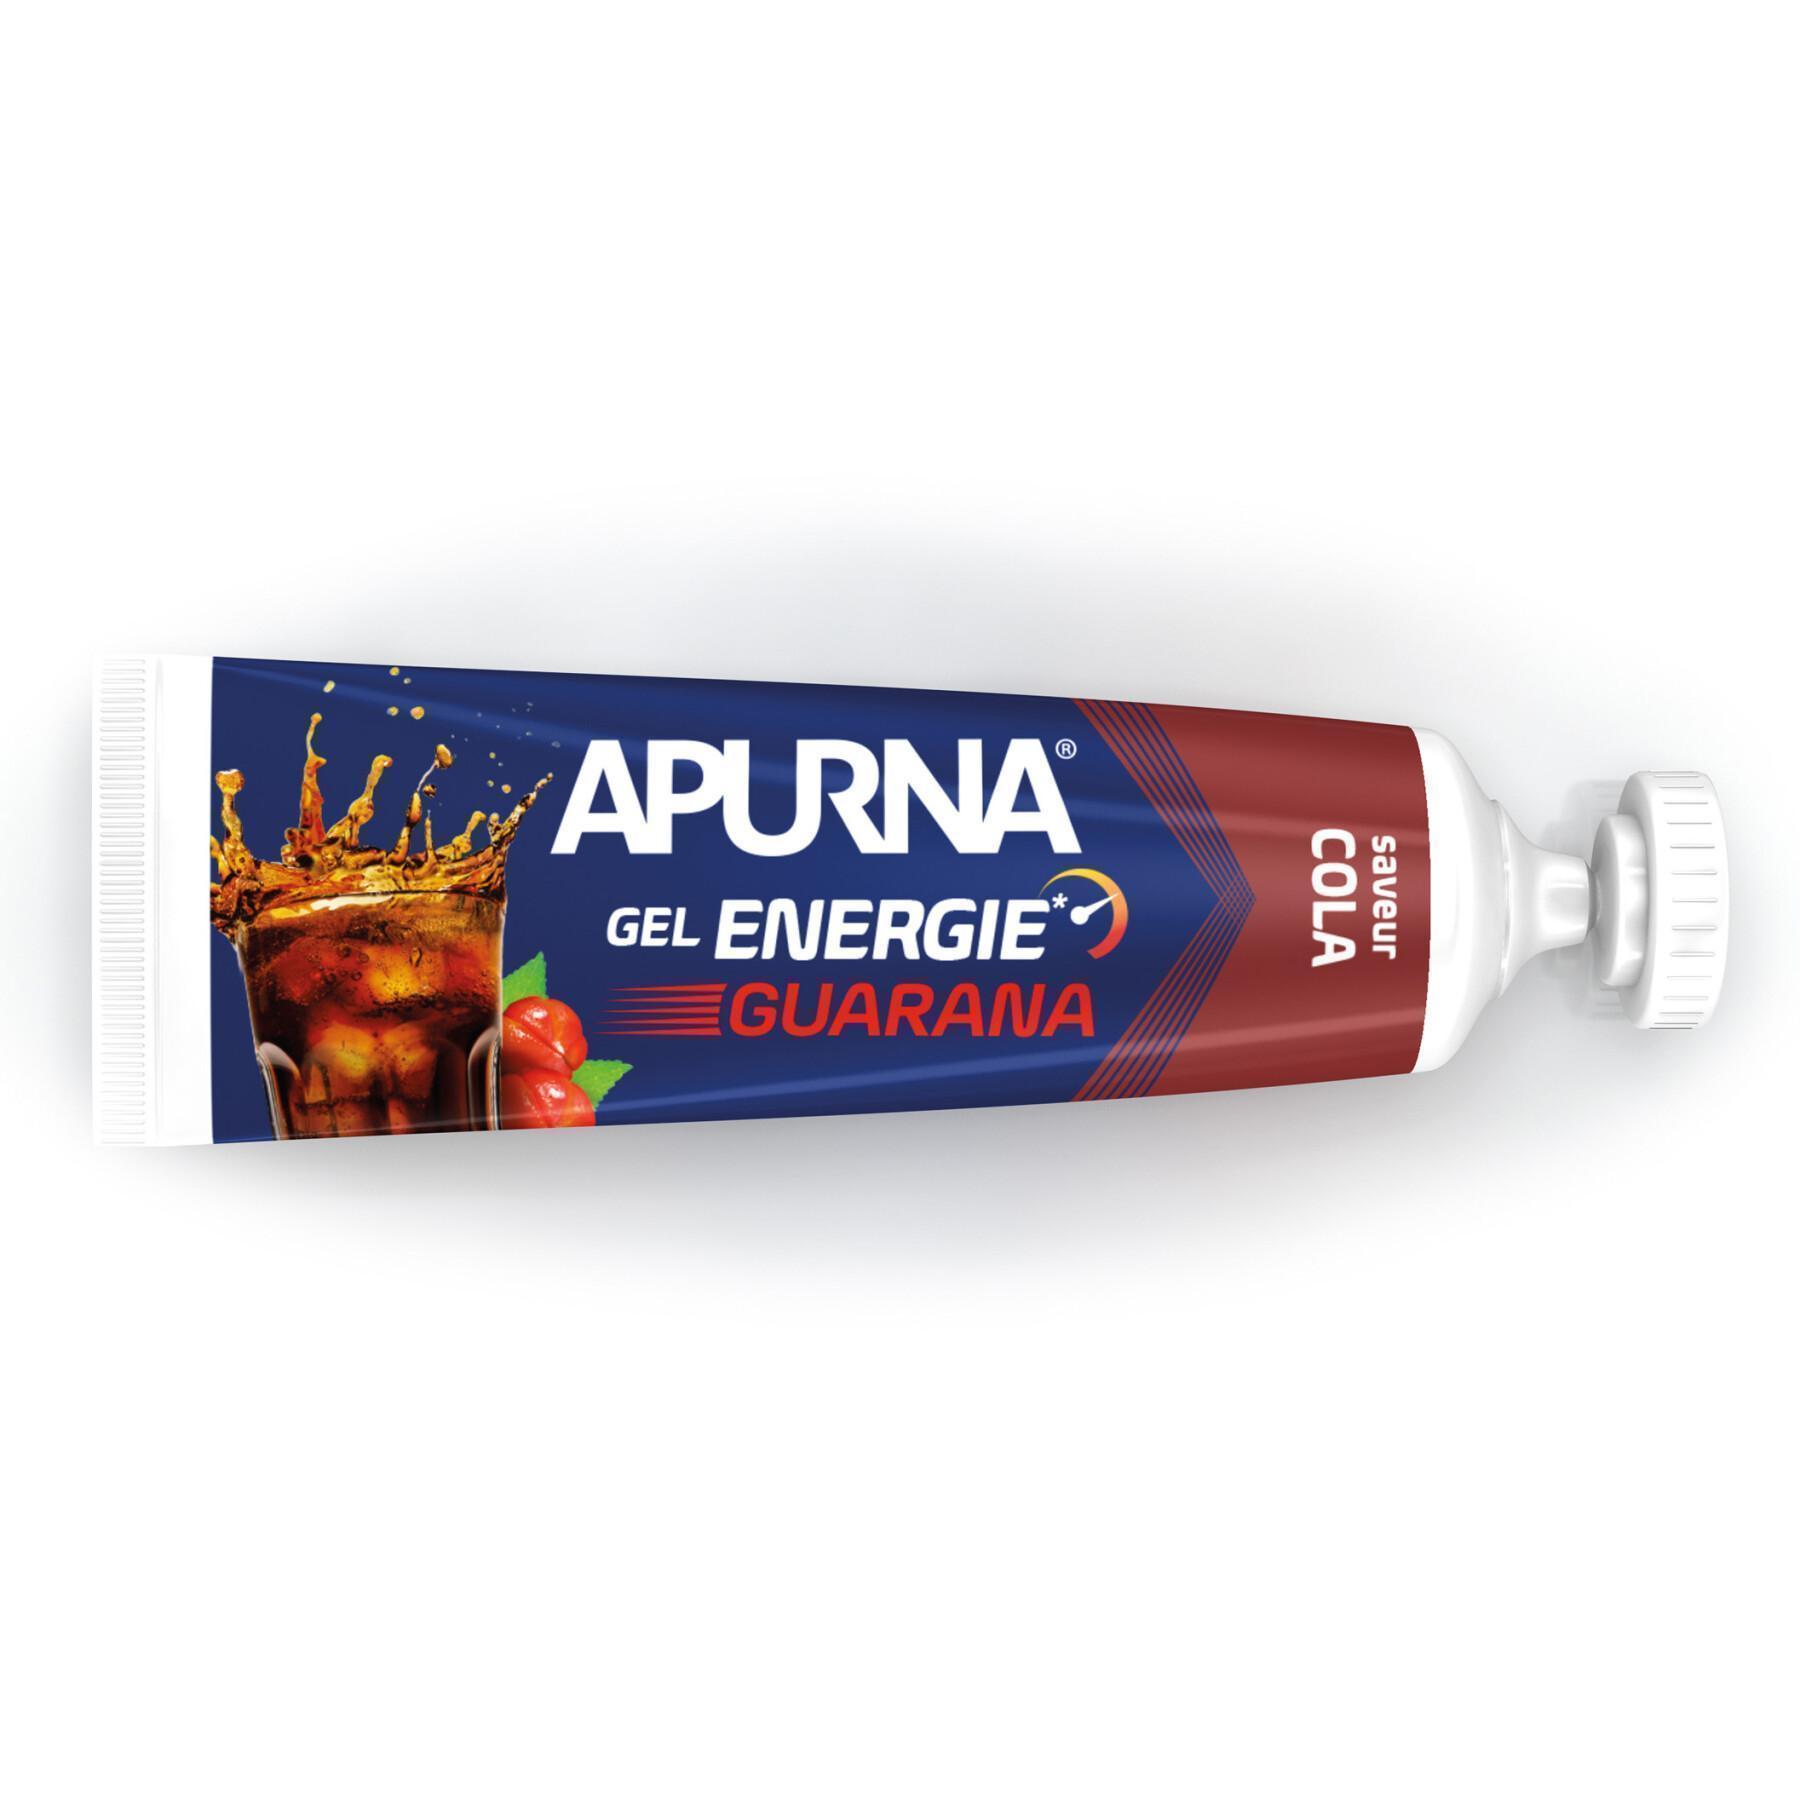 Paquete de 25 geles Apurna Energie guarana cola - 35g